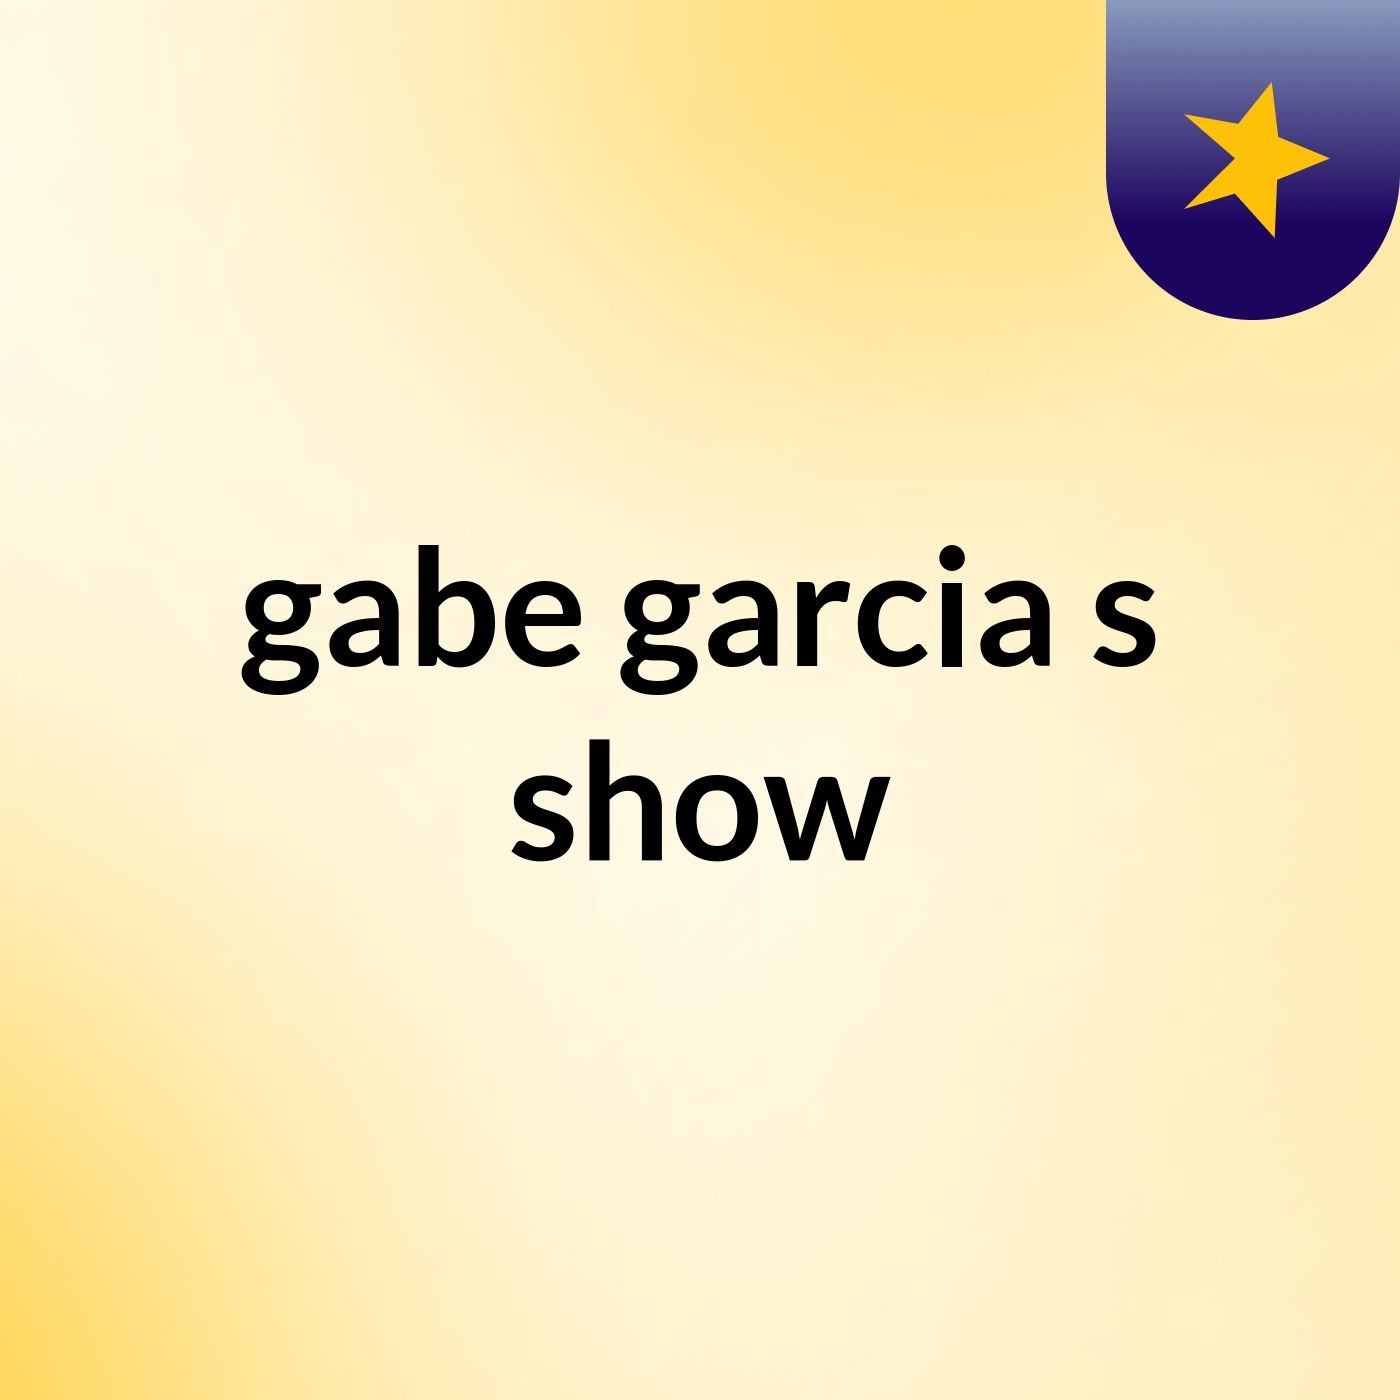 gabe garcia's show